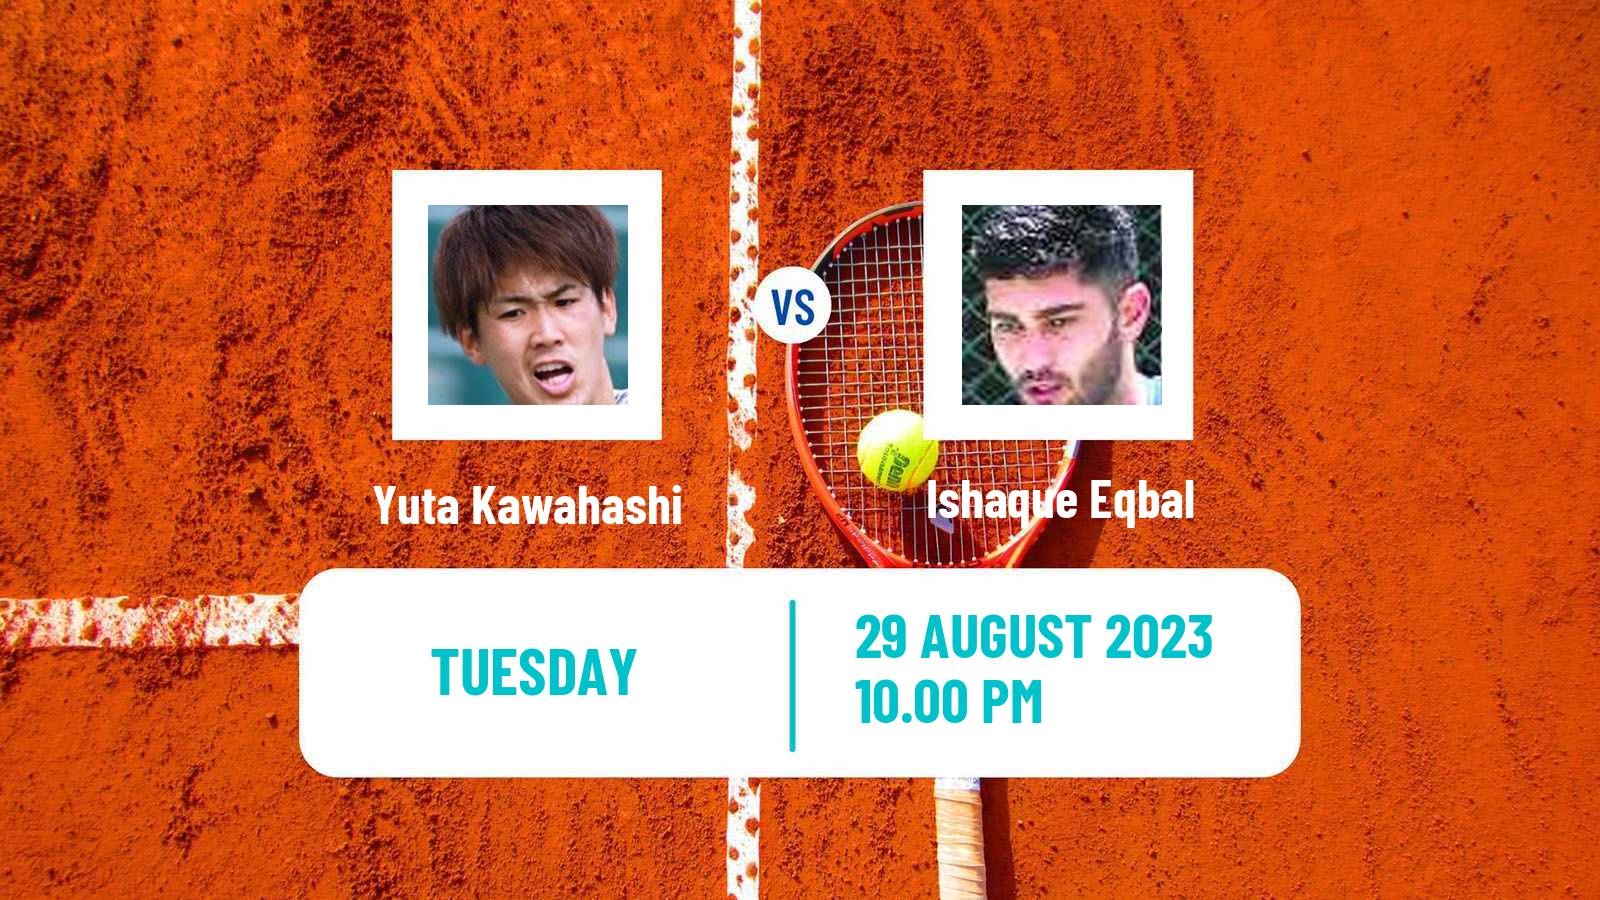 Tennis ITF M15 Nakhon Si Thammarat 7 Men Yuta Kawahashi - Ishaque Eqbal